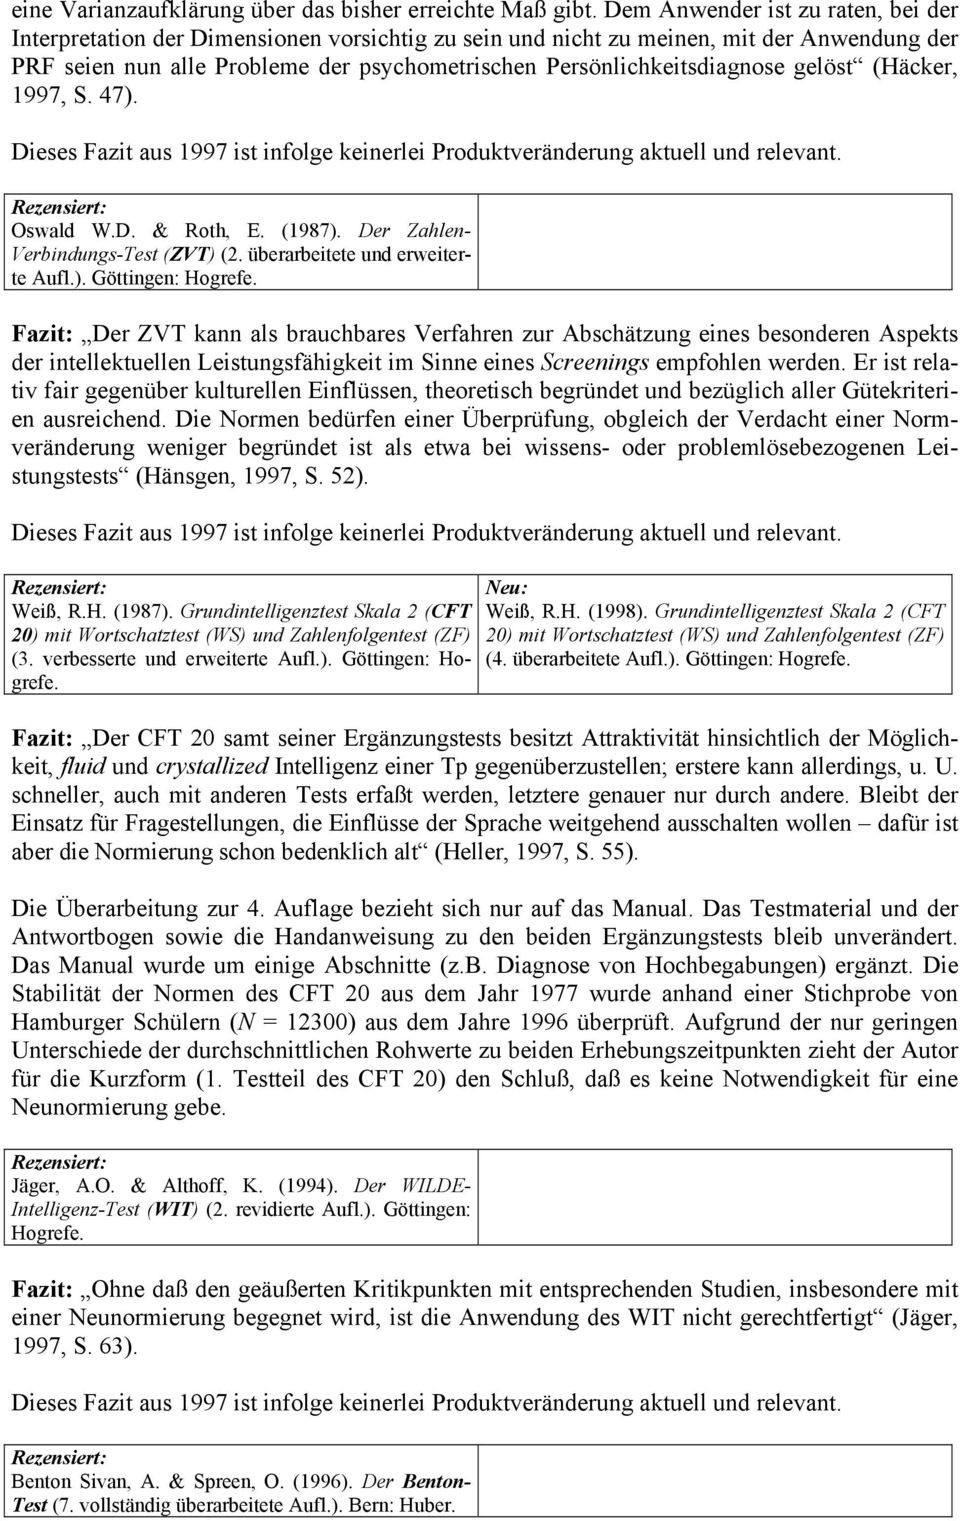 Persönlichkeitsdiagnose gelöst (Häcker, 1997, S. 47). Oswald W.D. & Roth, E. (1987). Der Zahlen- Verbindungs-Test (ZVT) (2. überarbeitete und erweiterte Aufl.). Göttingen: Hogrefe.